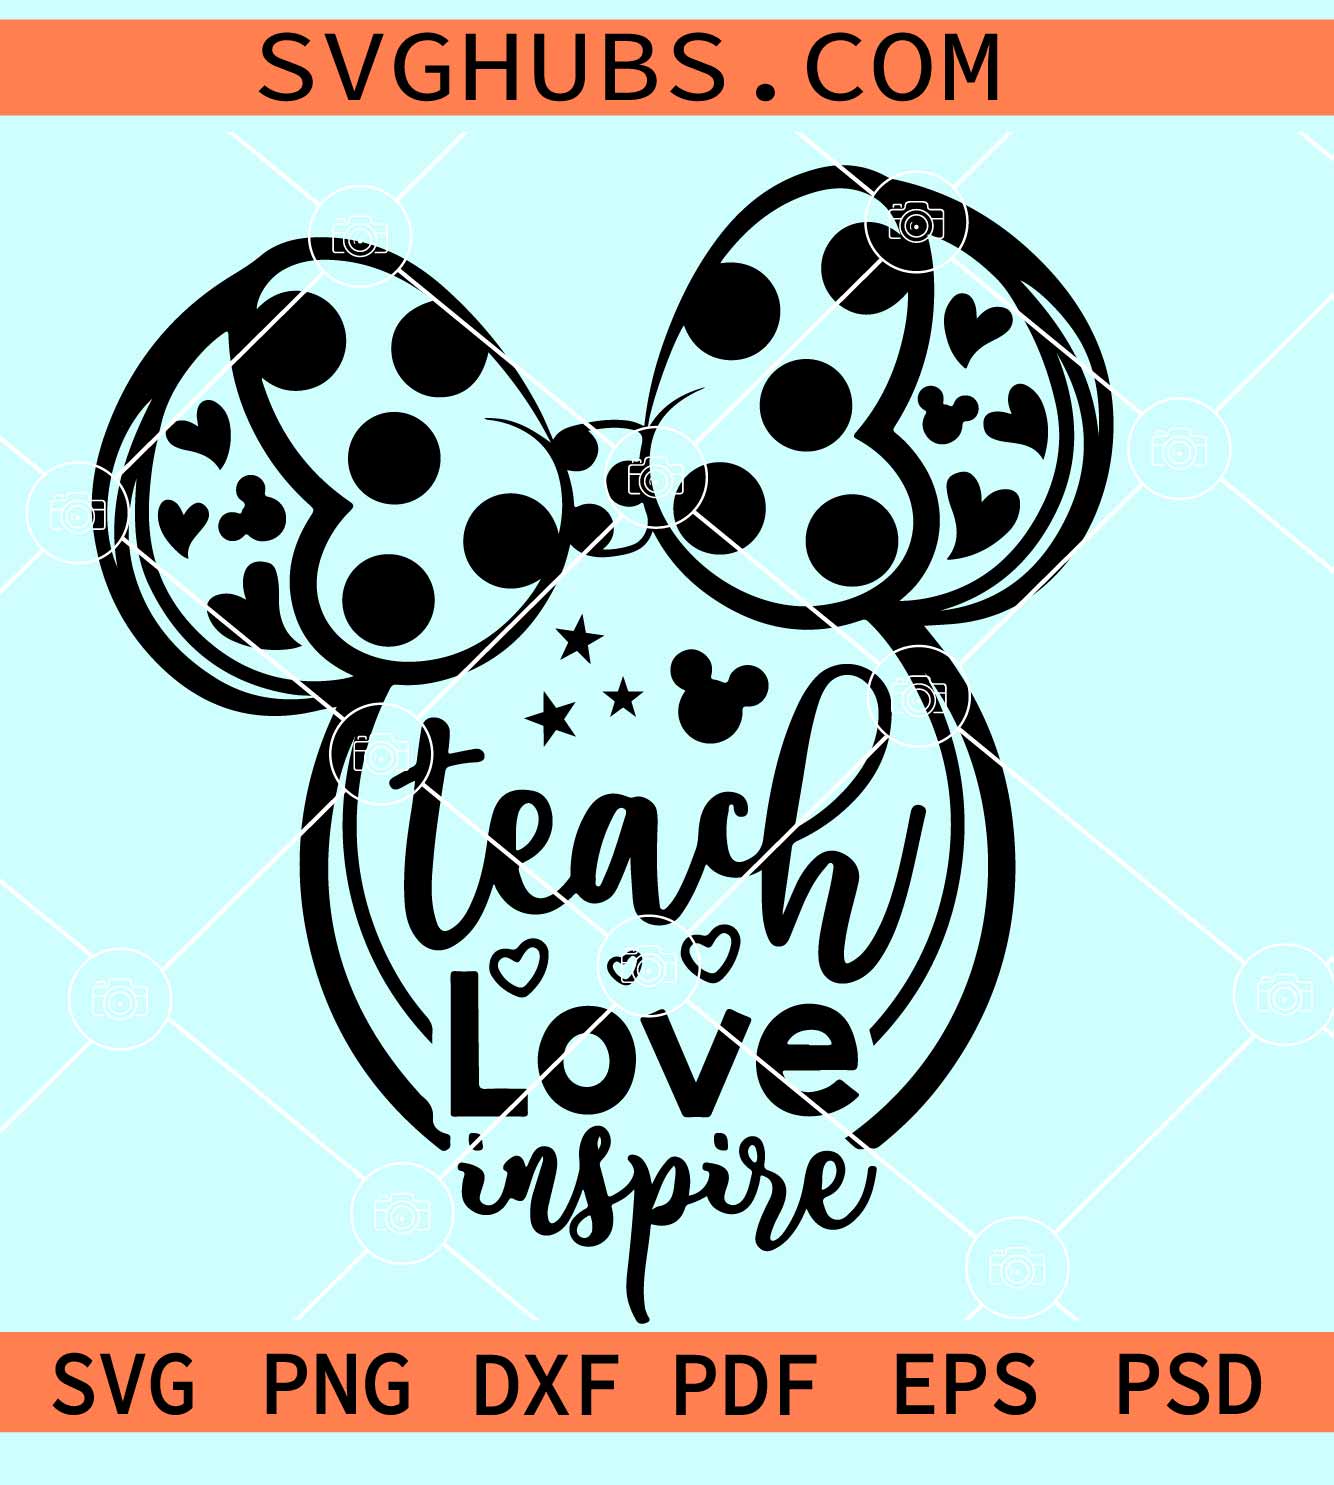 Mickey Teach Love Inspire Svg, Teach Love Inspire Svg, Disney teacher svg